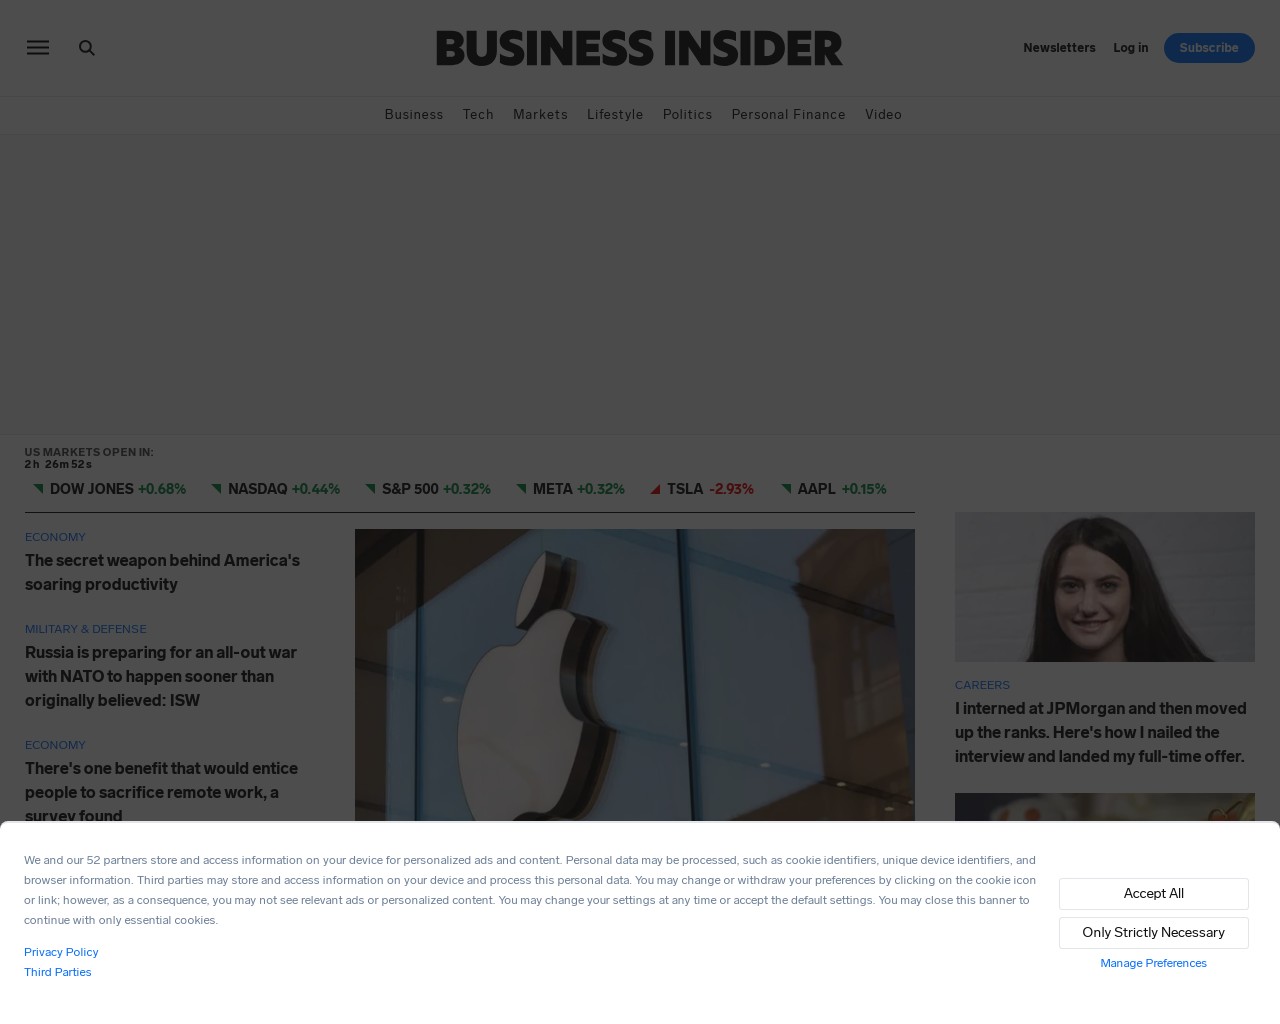 Изображение скриншота сайта - Один з найкращих сайтів, на якому можна знайти інформацію про товари, бізнес та економіку - це Business Insider